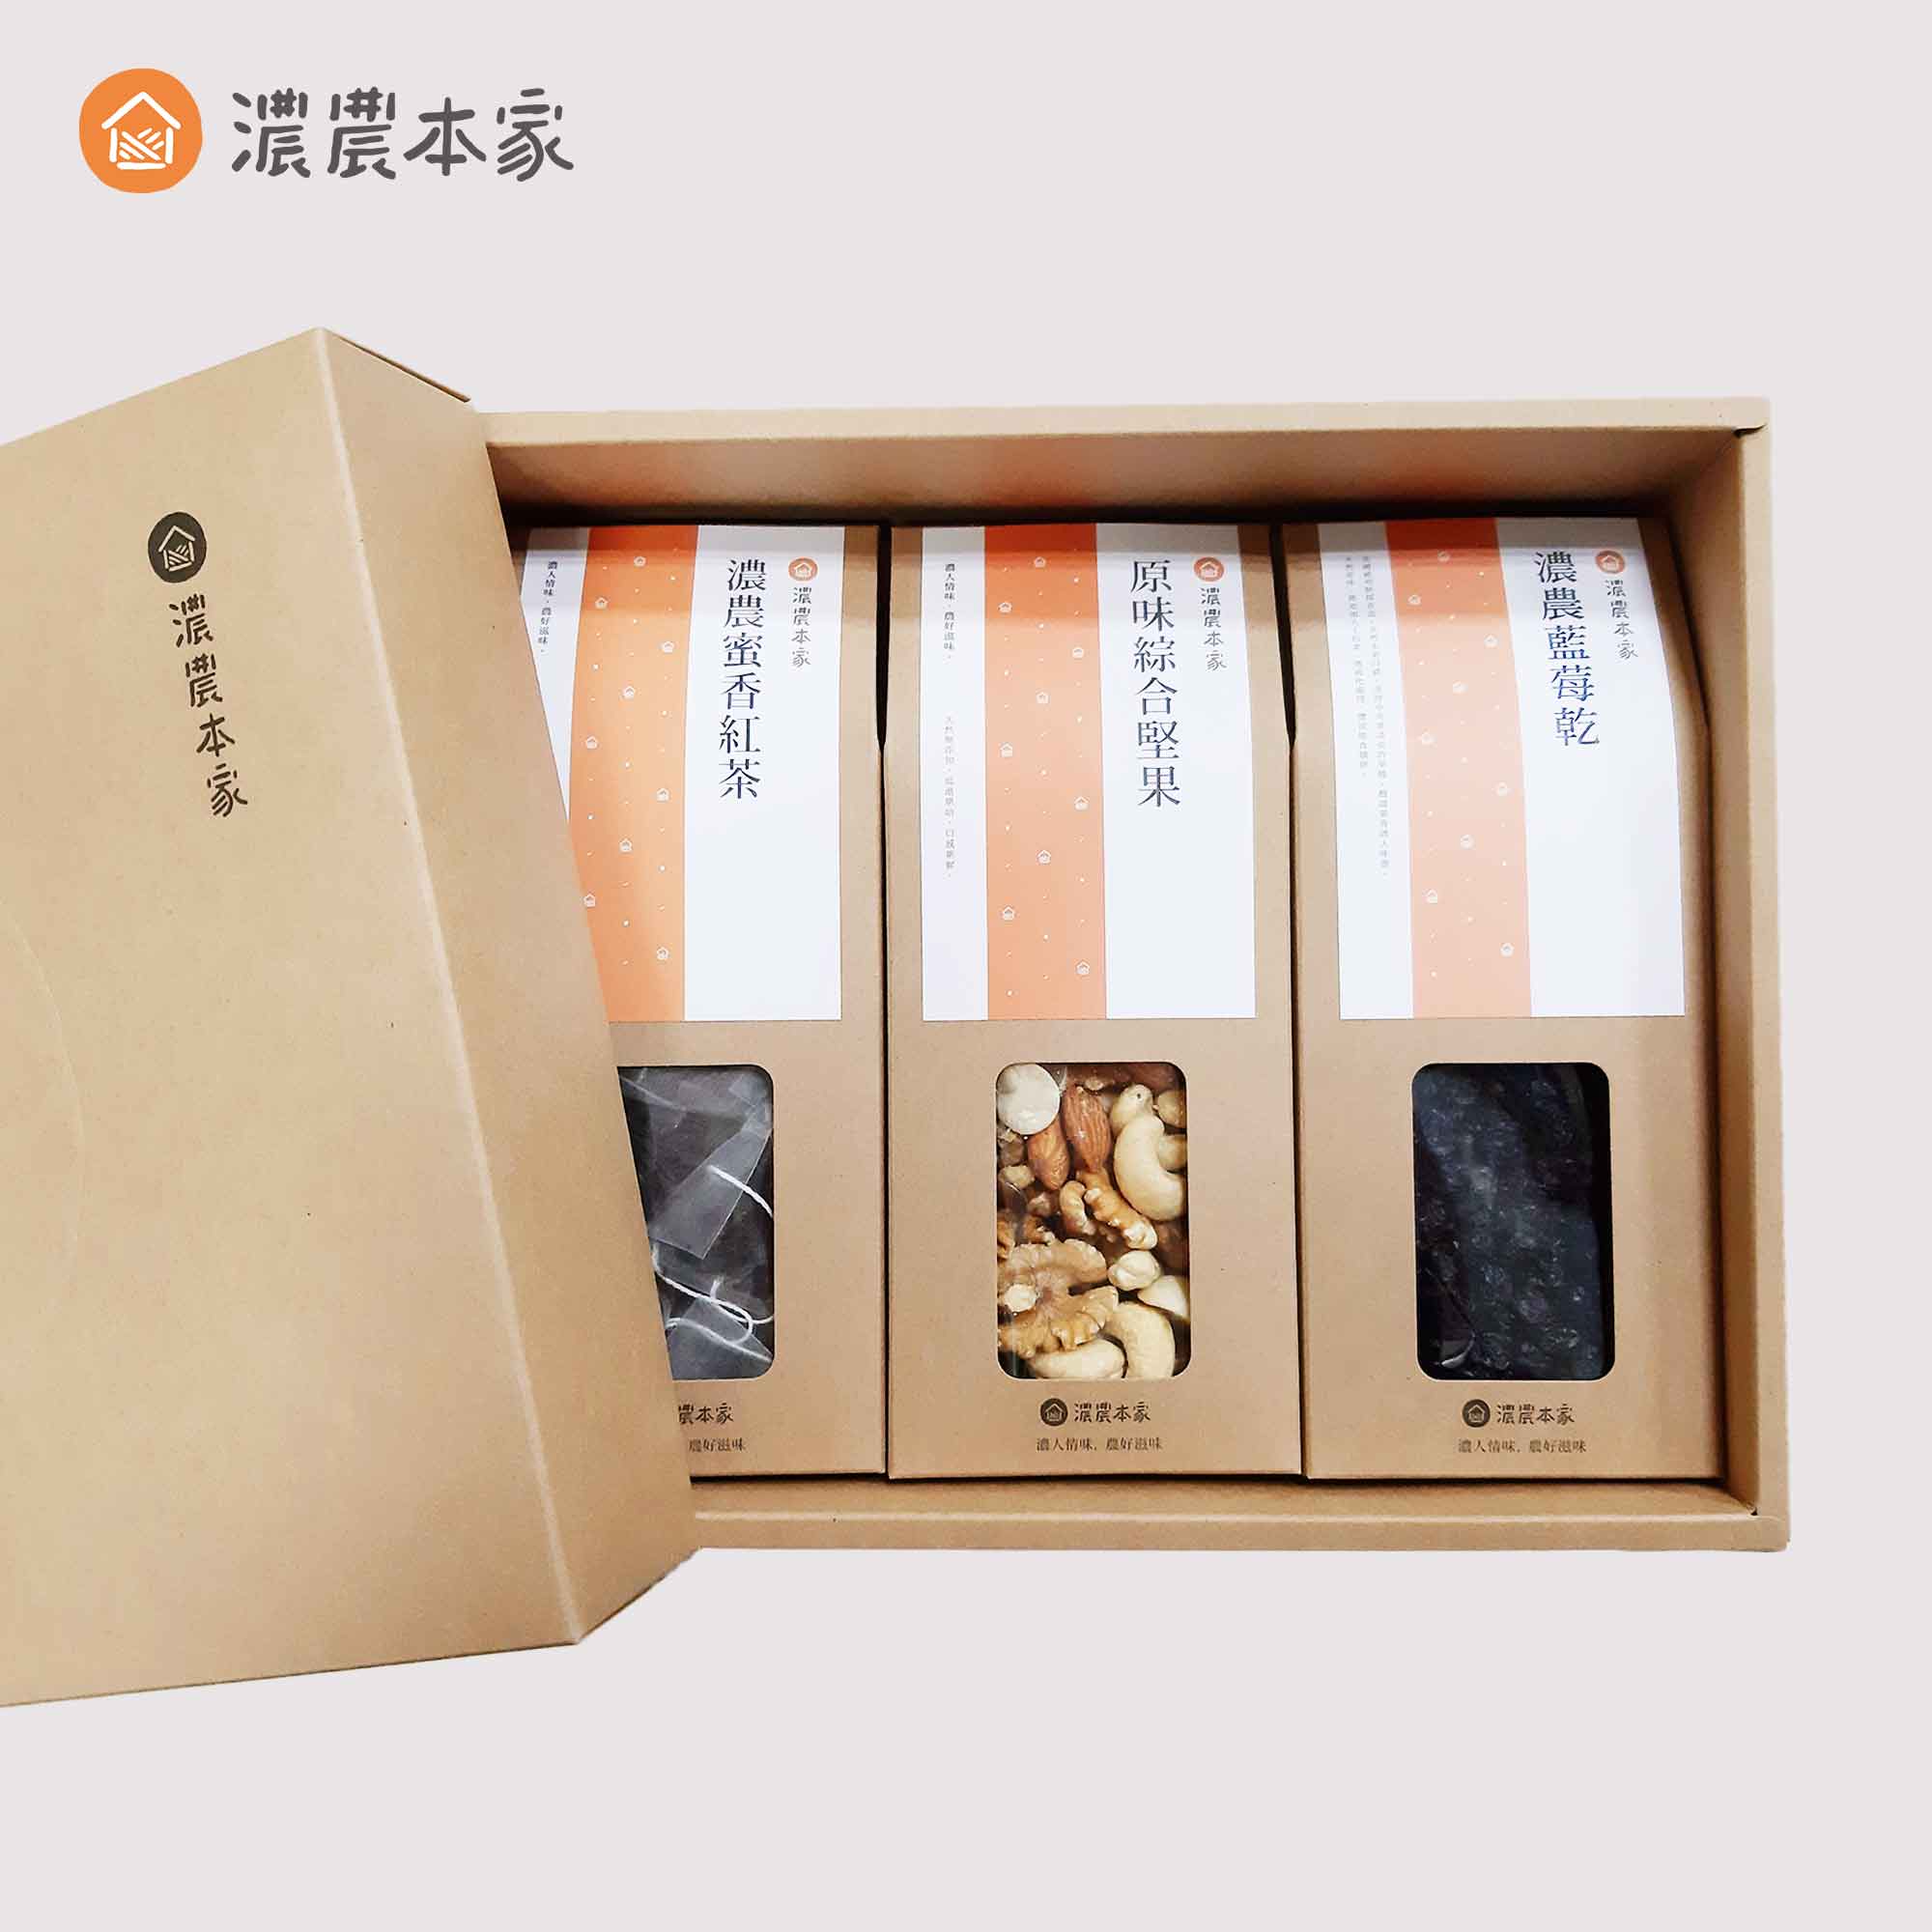 台灣常溫伴手禮推薦不用冷藏的健康禮盒